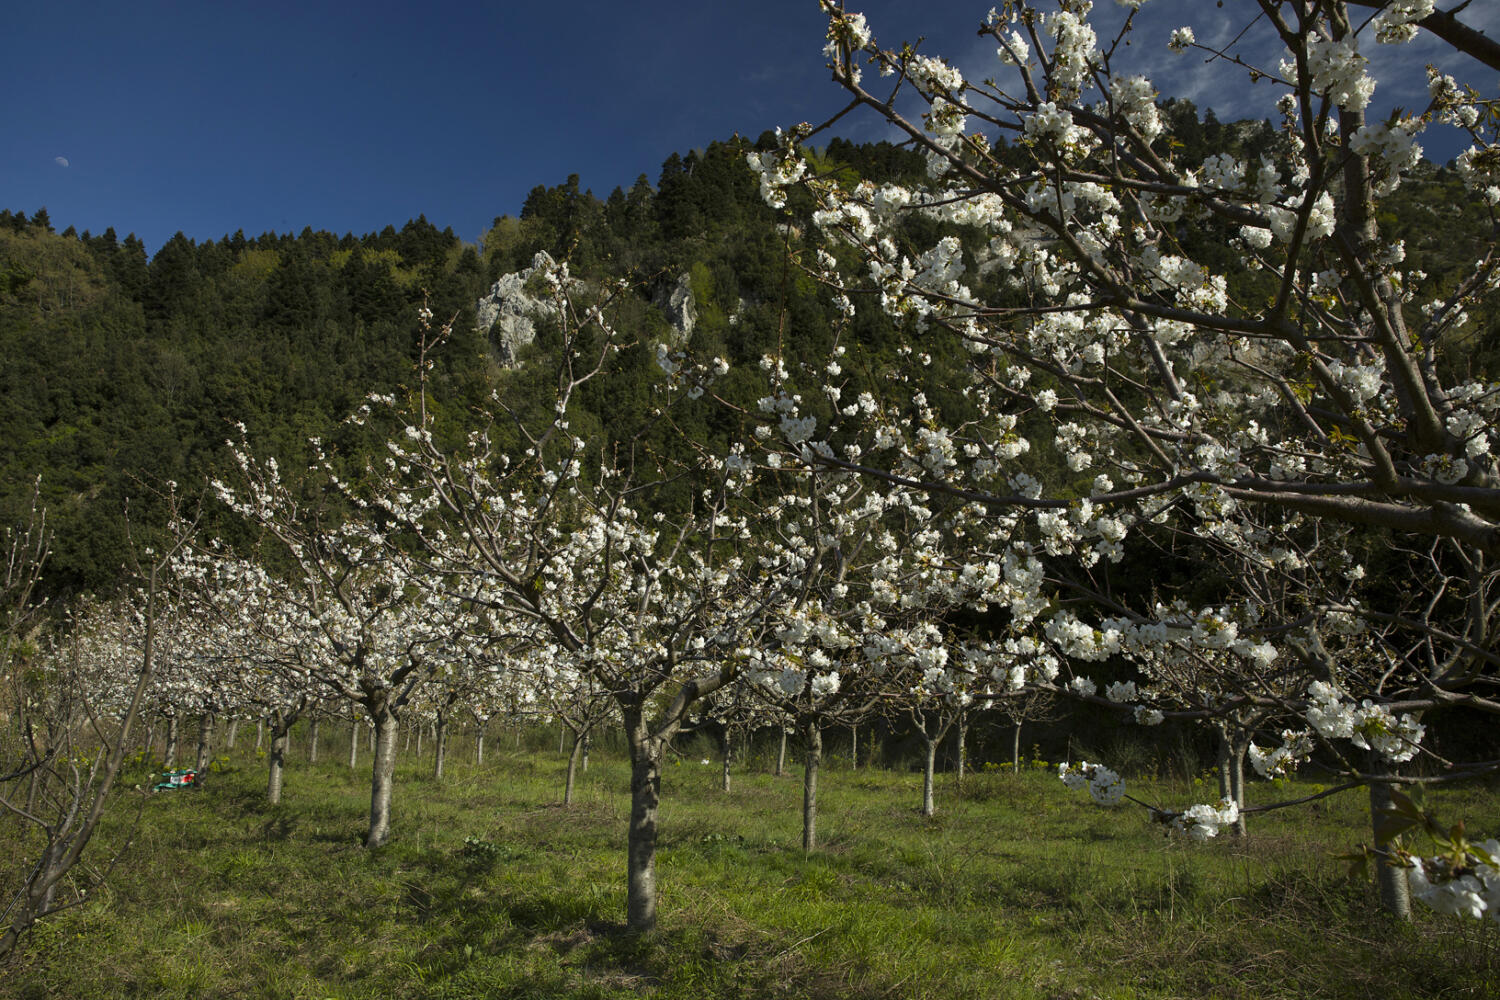 Ανθισμένες κερασιές Μπένου Παναγιώτη, χωριό Μετόχι. Φωτογραφία: ©Βασίλης Συκάς, για τον Δήμο Κύμης-Αλιβερίου